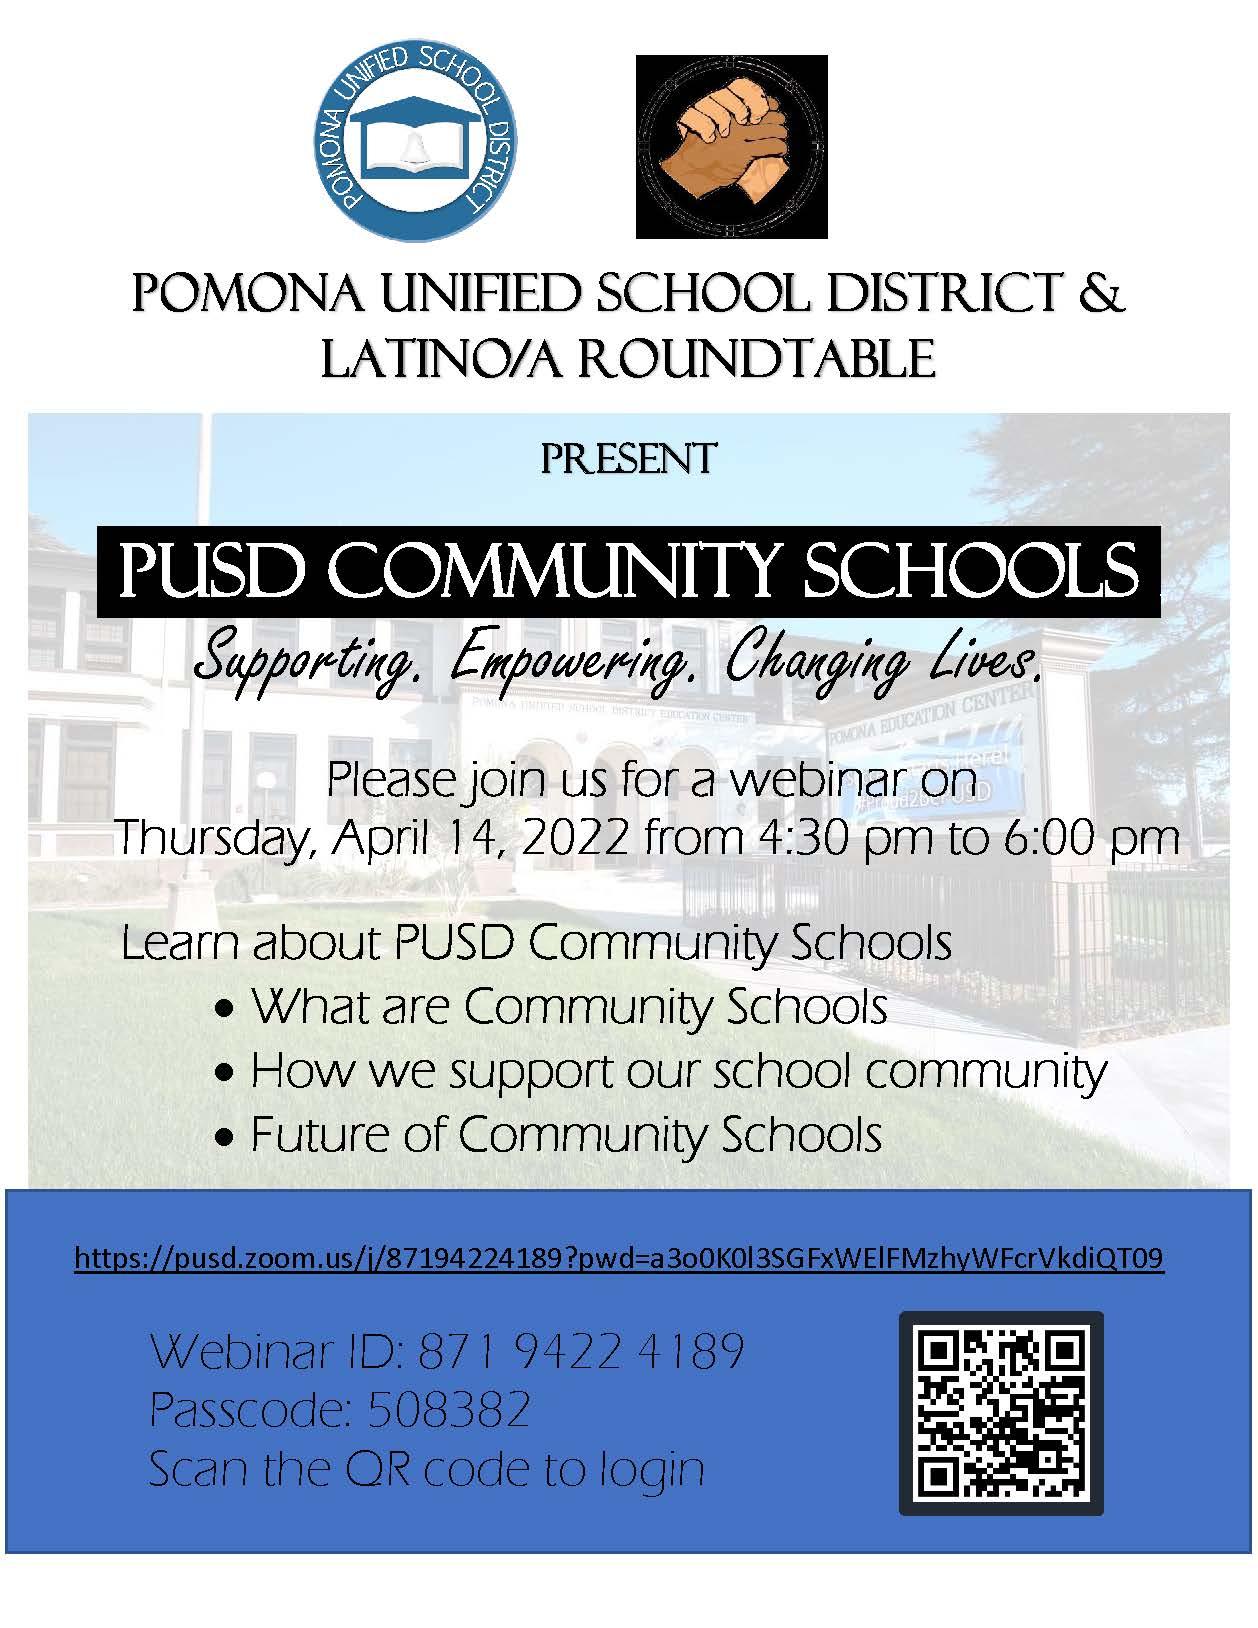 Acompáñenos a un seminario virtual para que conozca sobre las escuelas comunitarias de PUSD el jueves, 14 de abril del 2022 de 4:30 pm a 6:00 pm